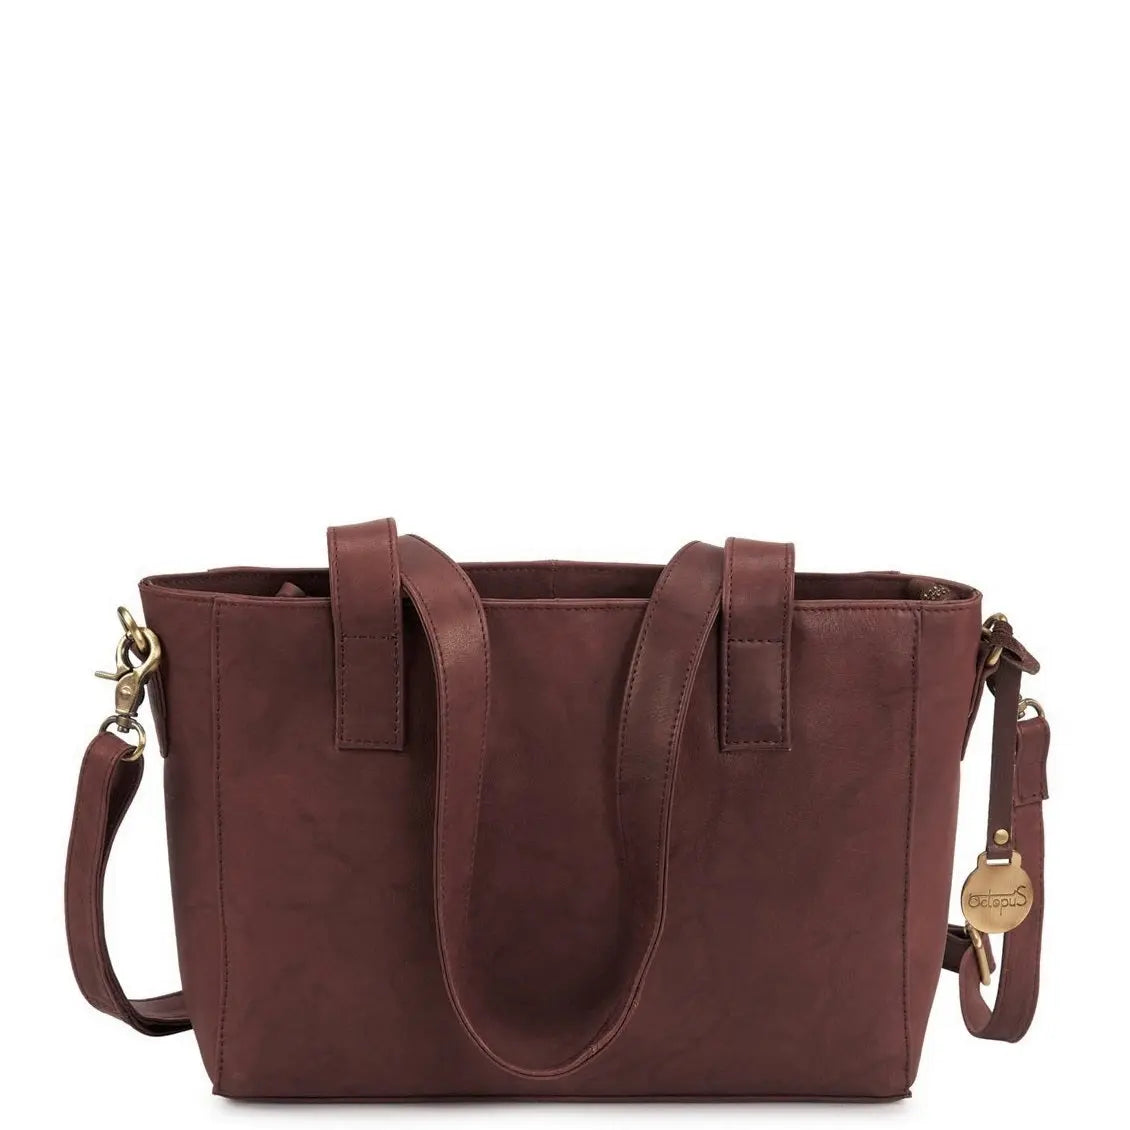 Se Style Leeds: Flot mørkebrun lædertaske (KUN ET STK. PÅ LAGER). Smuk og klassisk shopper, hånd, skulder- og crossovertaske hos Octopus Denmark